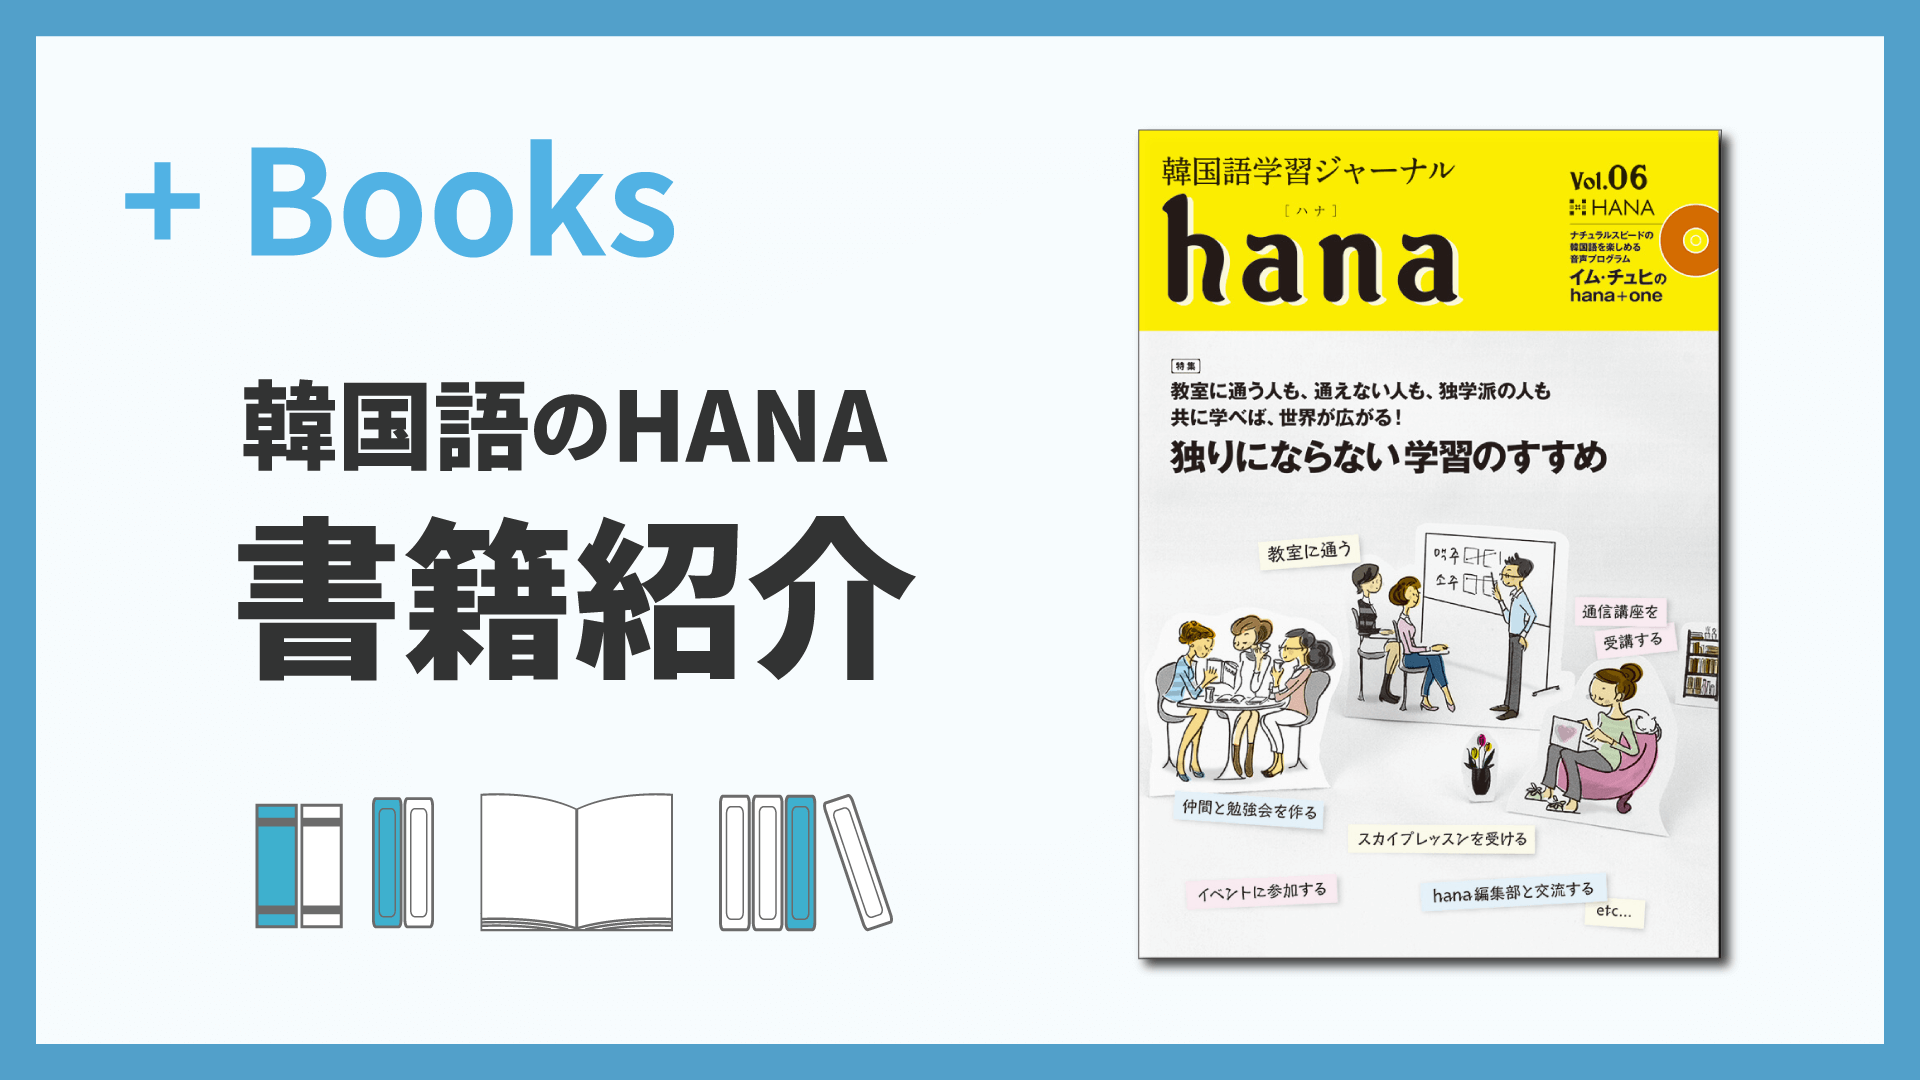 韓国語学習ジャーナルhana Vol. 06「独りにならない学習のすすめ」